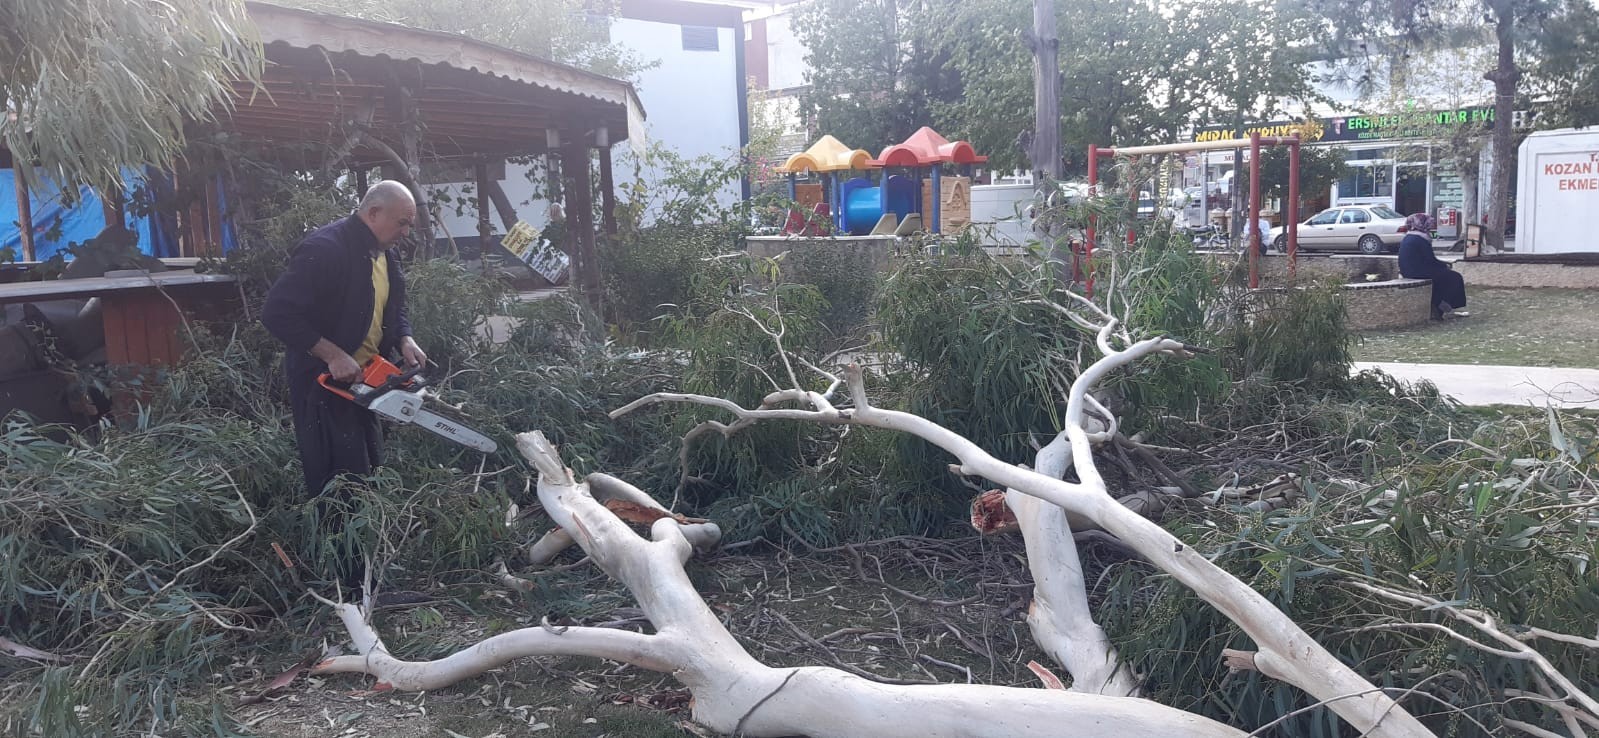 Kozan’da şiddetli fırtına ağaçları devirdi #adana